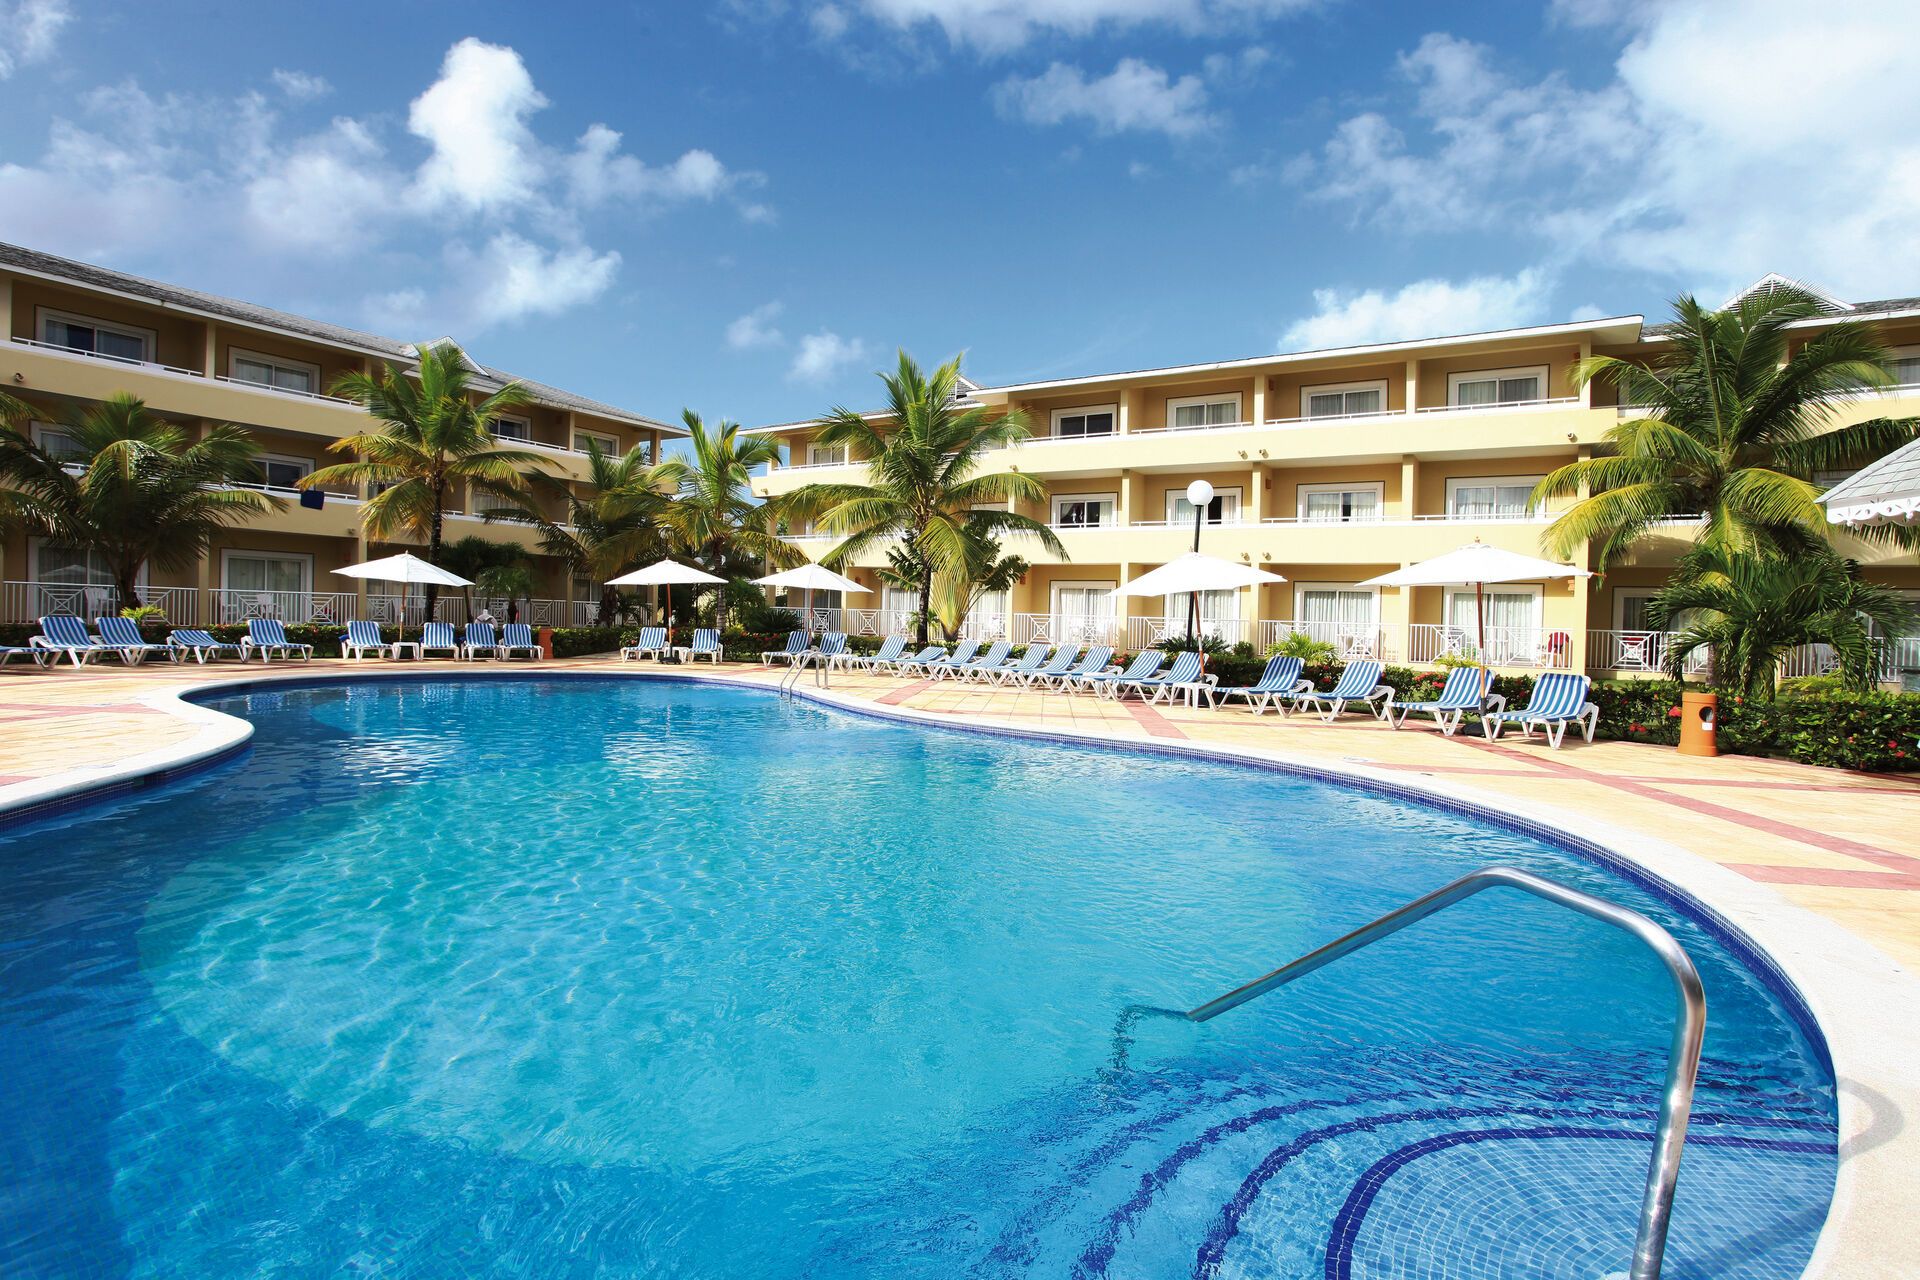 République Dominicaine - Las Terrenas - Hotel Bahia Principe Grand El Portillo 4*